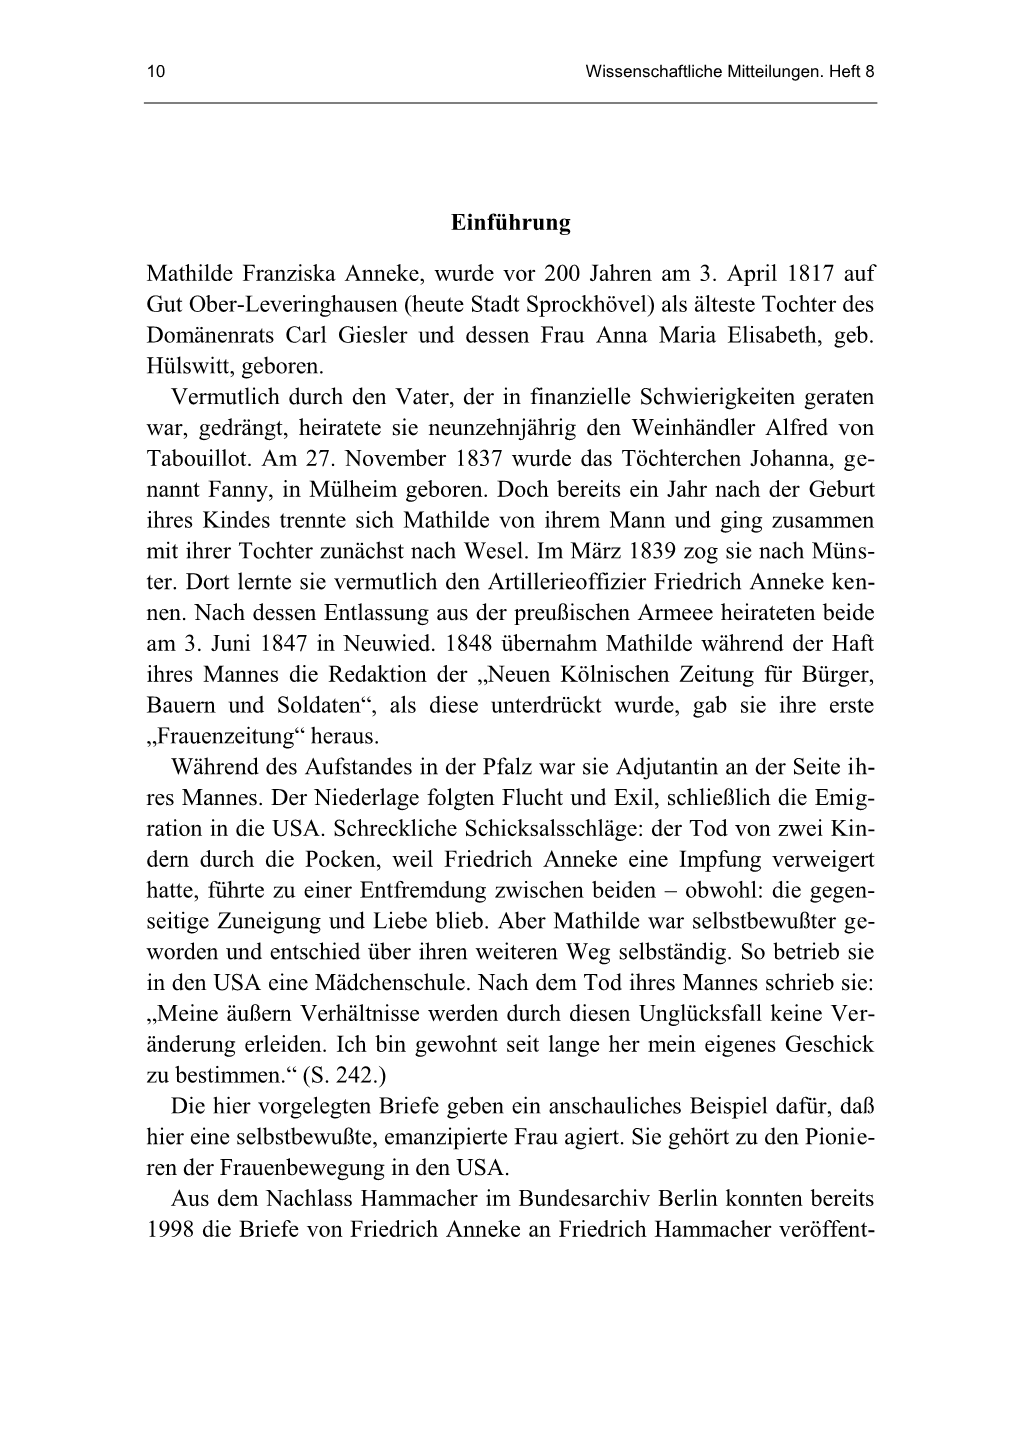 Erhard Kiehnbaum Mathilde Franziska Anneke Wissenschaftliche Mitteilungen. Heft 8